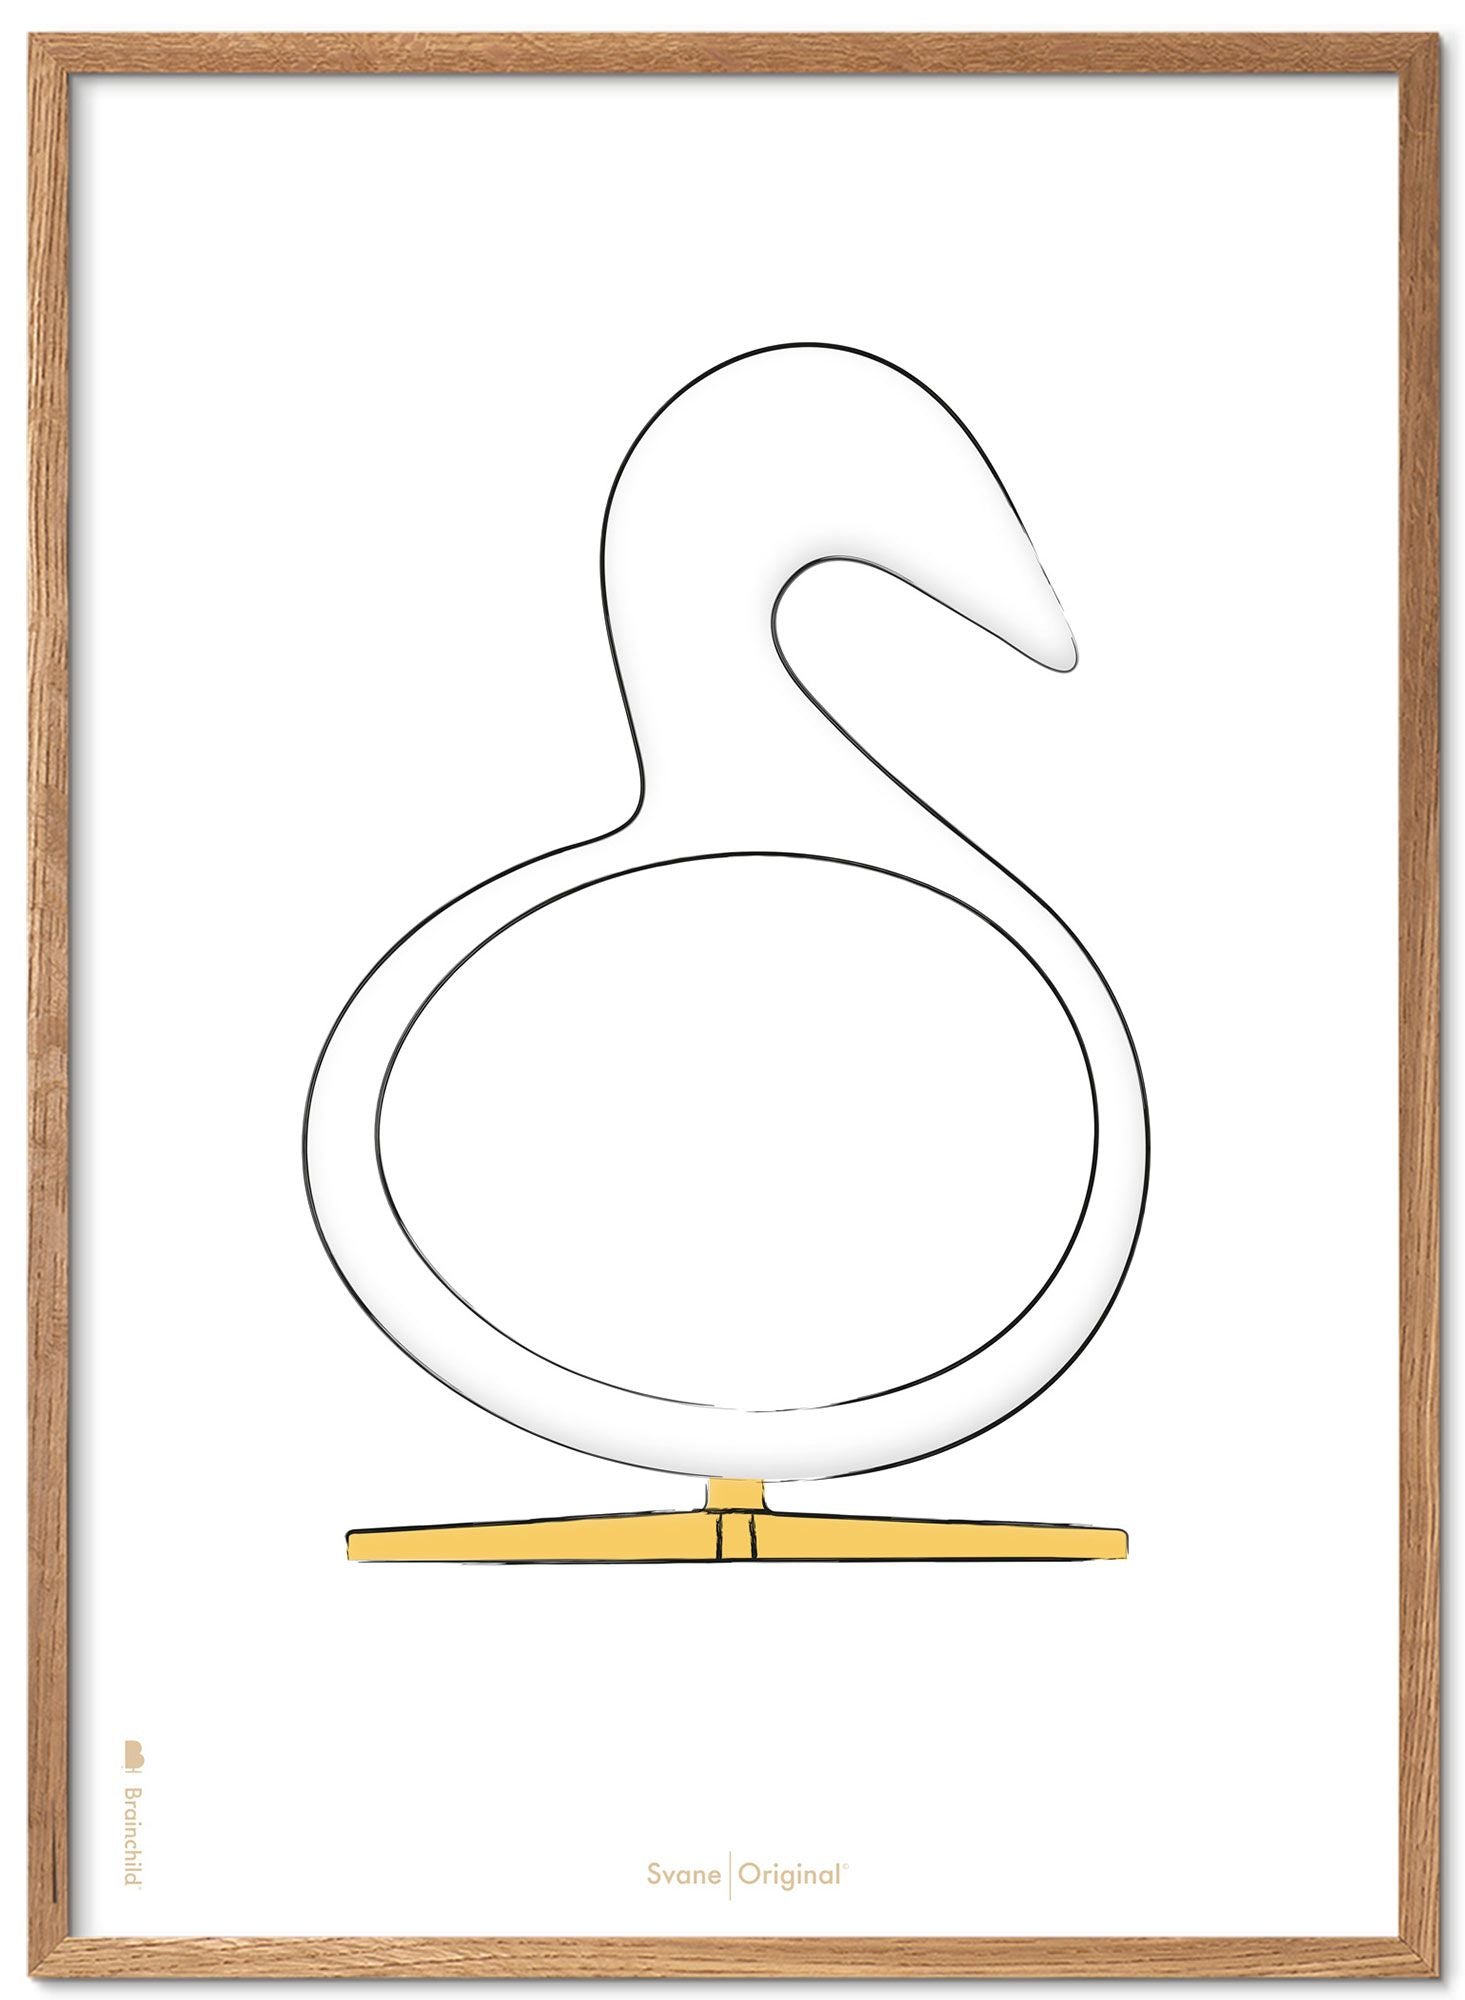 Marco de póster de boceto de diseño de Swan. Hecho de madera clara de 30x40 cm, fondo blanco